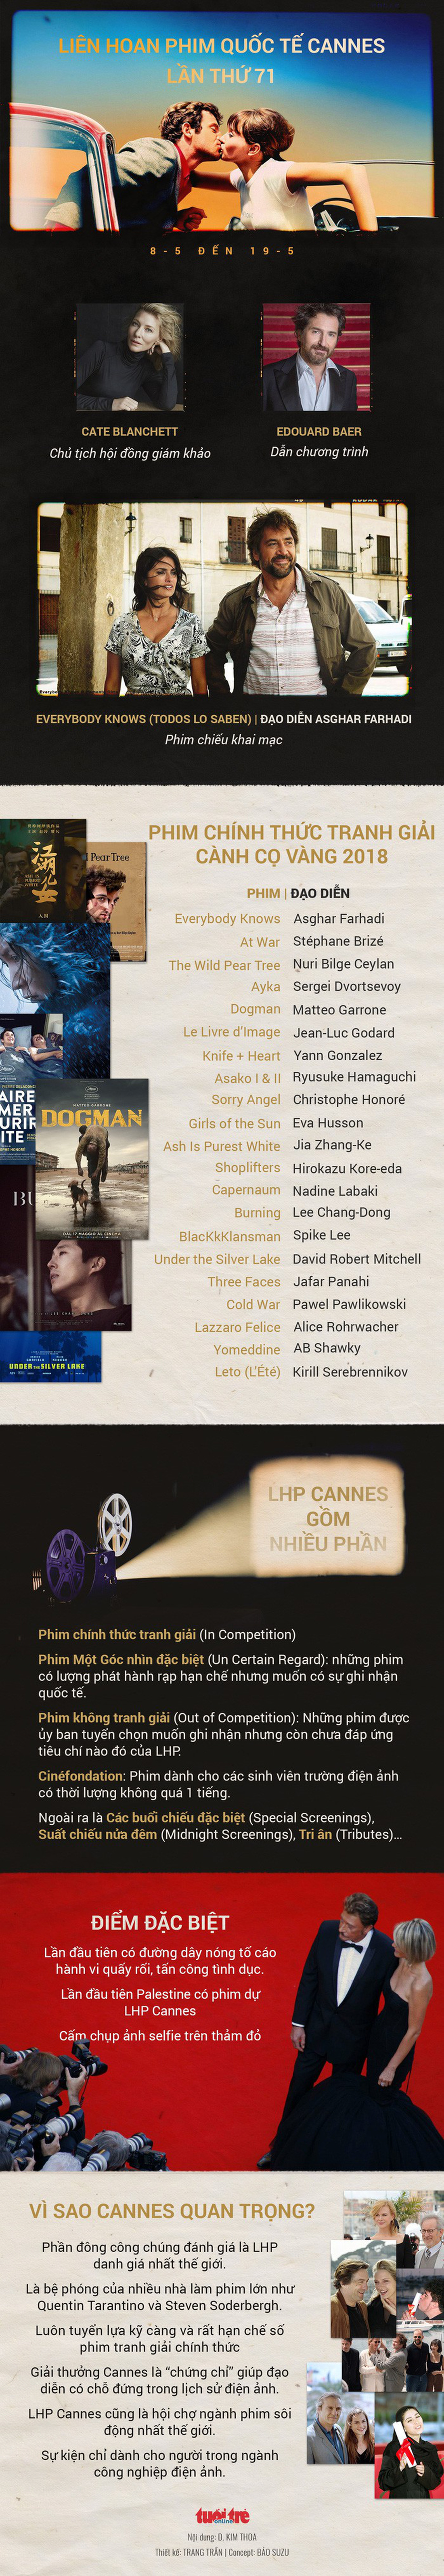 Lịch sử Cannes chỉ có 8 Cành Cọ Vàng cho phim châu Á - Ảnh 17.